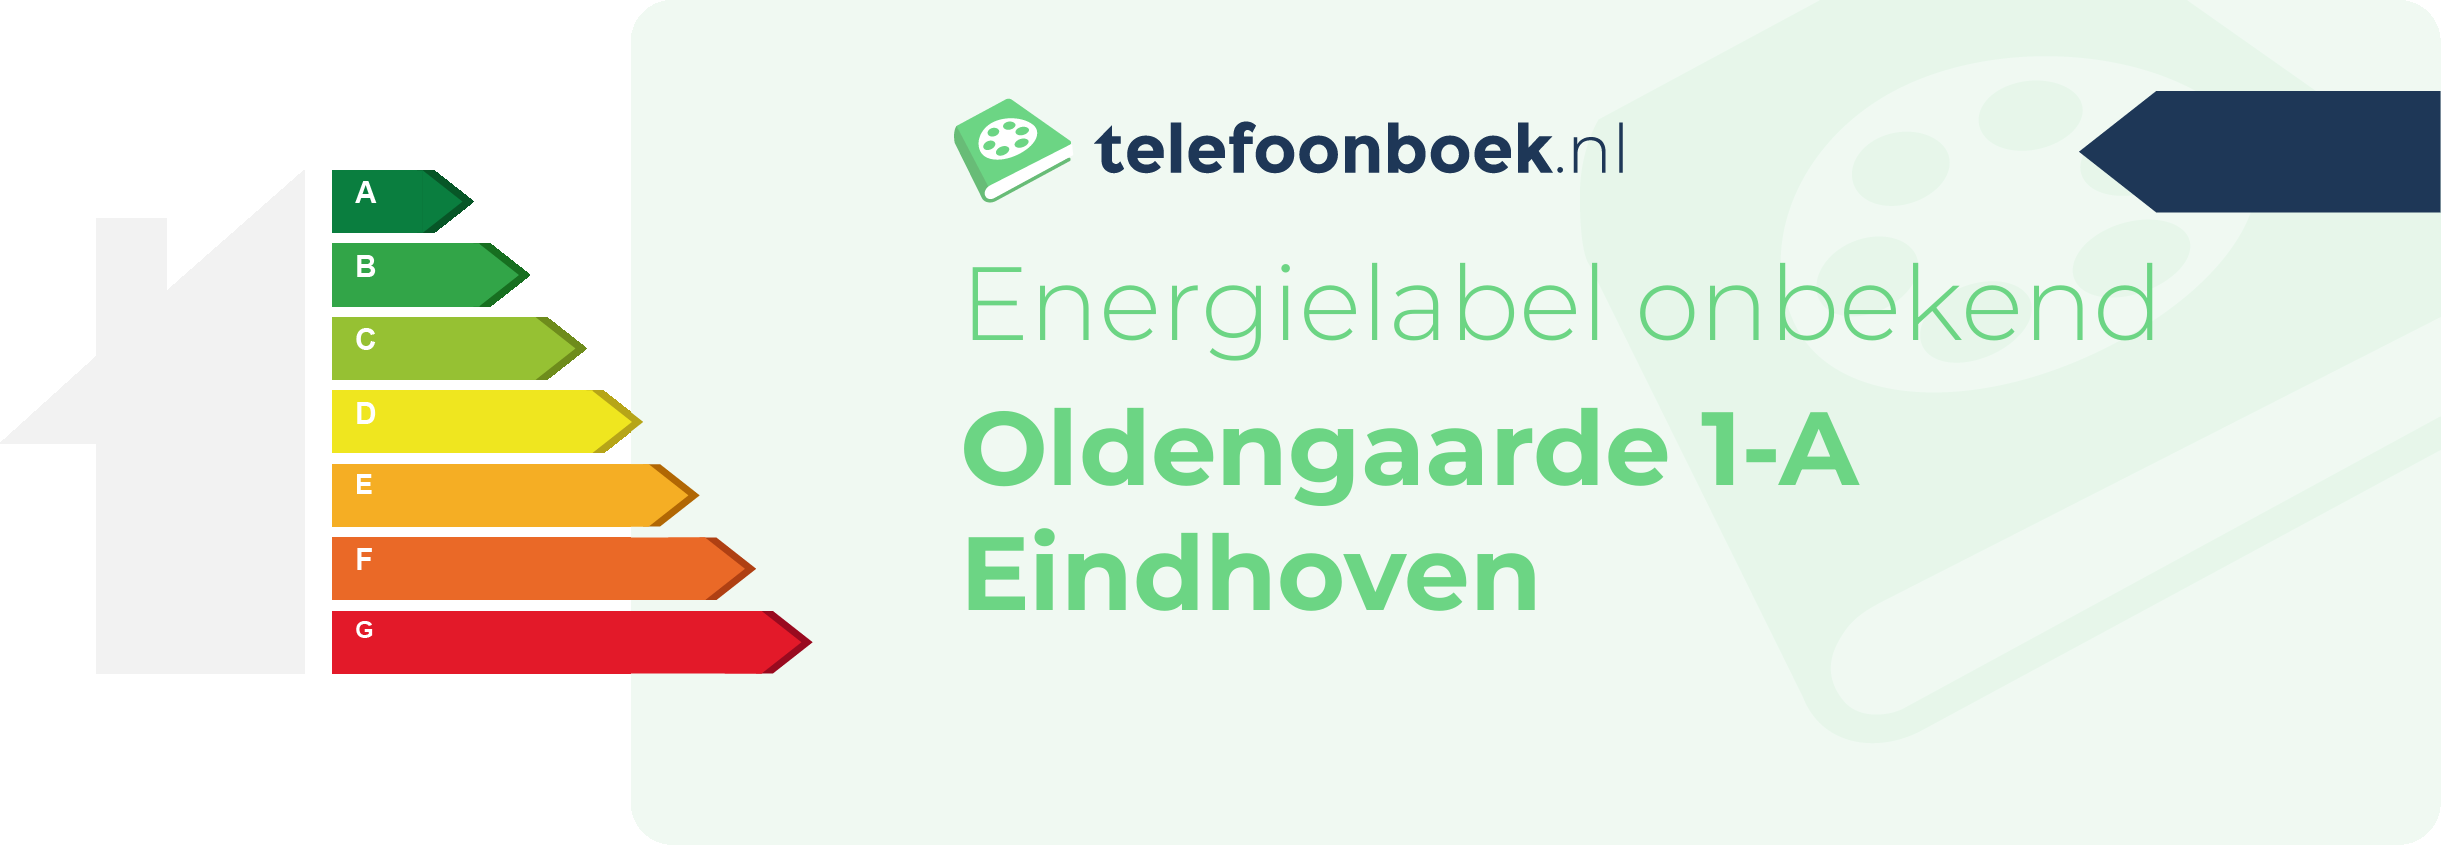 Energielabel Oldengaarde 1-A Eindhoven